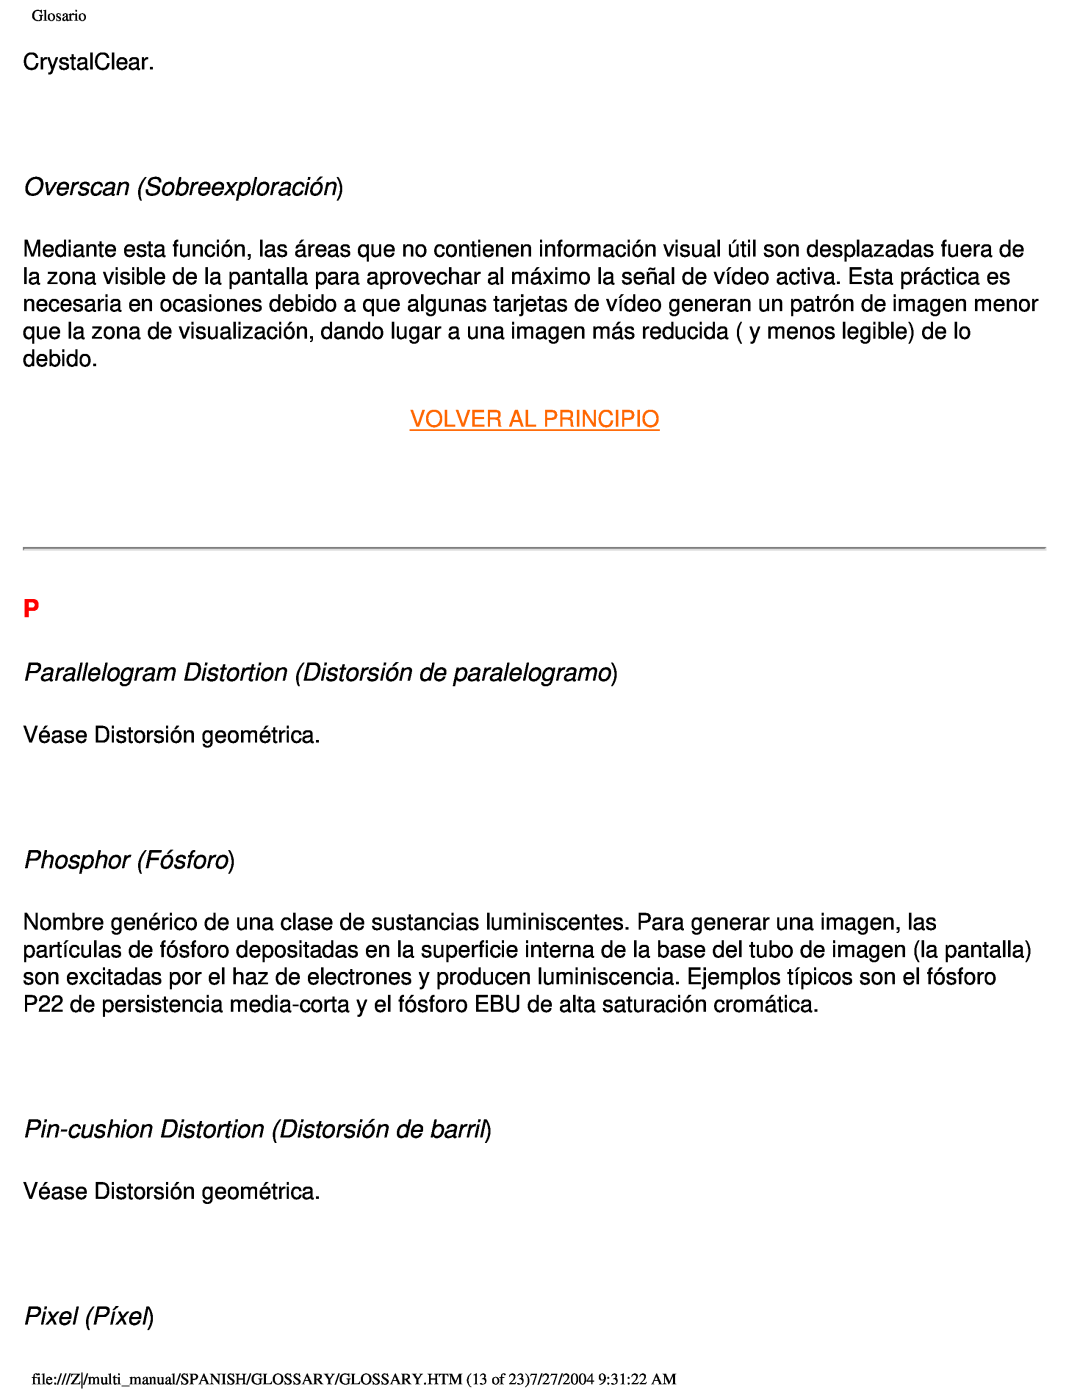 Philips 107B user manual Overscan Sobreexploración, Parallelogram Distortion Distorsión de paralelogramo, Phosphor Fósforo 